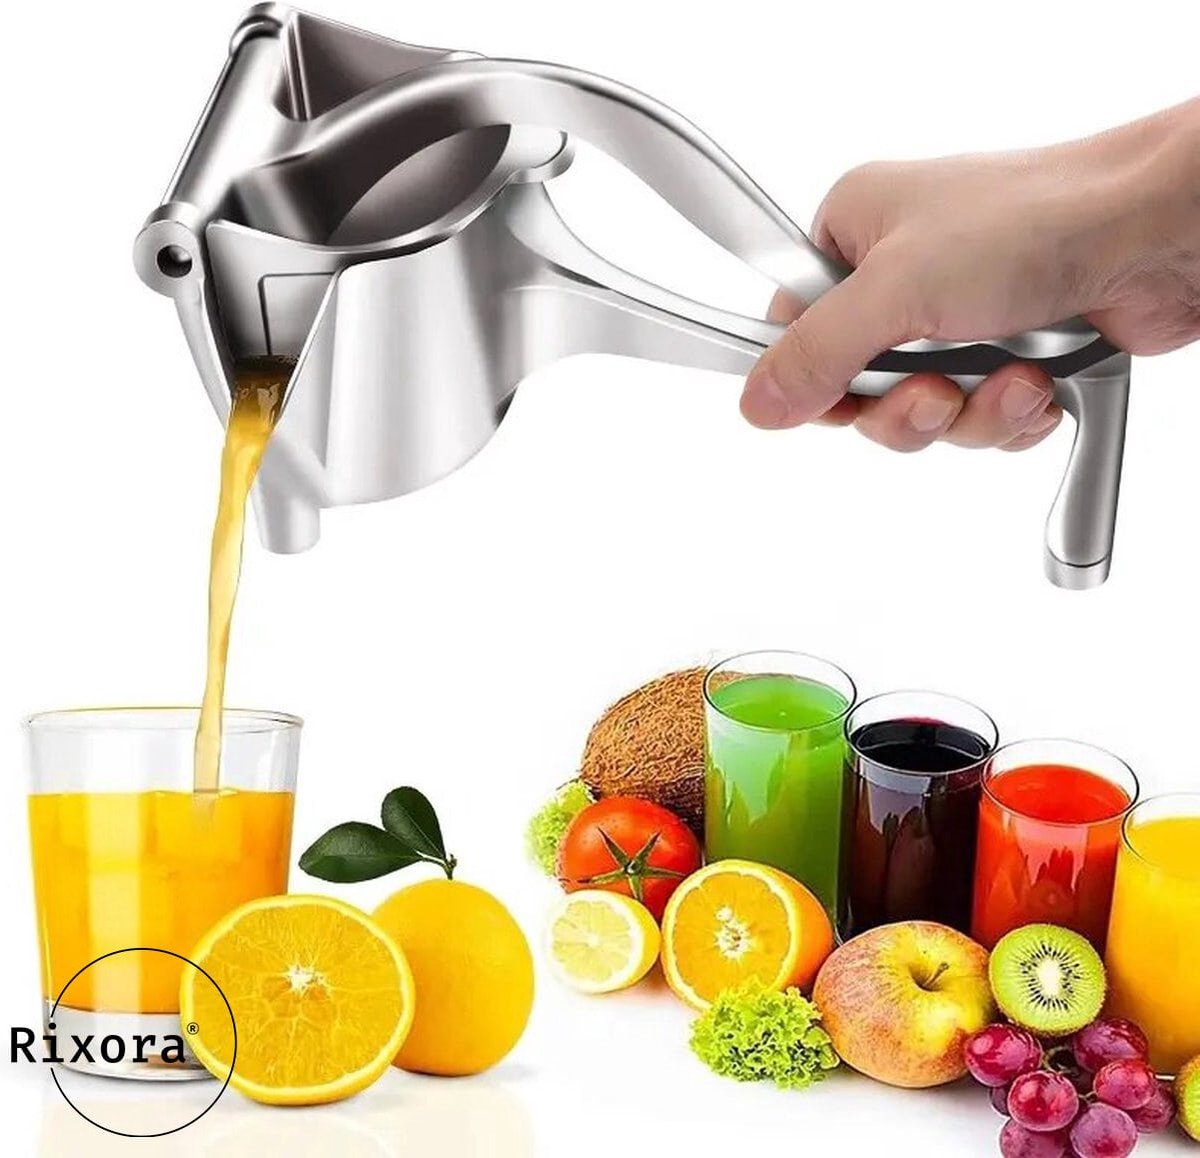 Rixora® fruitpers handmatig - sinaasappelpers - citruspers - fruit press - handpers - wijnpers - citroenknijper - limoenpers - handcitruspers - RVS